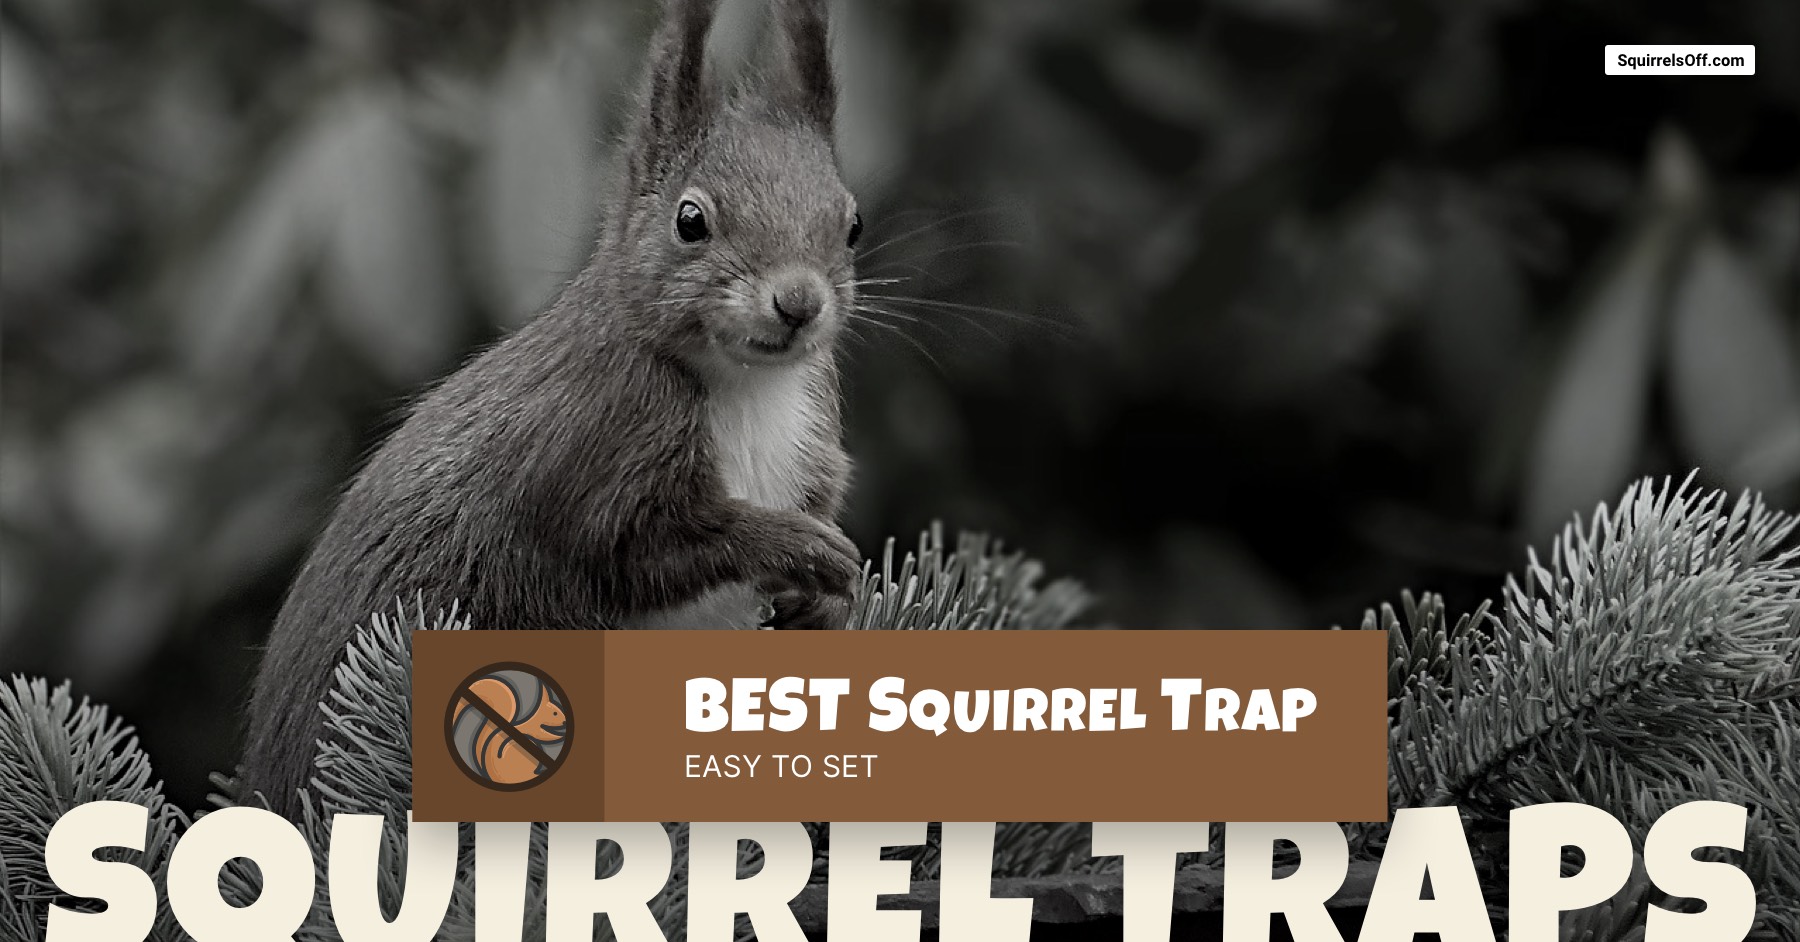 https://squirrelsoff.com/wp-content/uploads/2020/01/Best-Squirrel-Trap-1.jpg